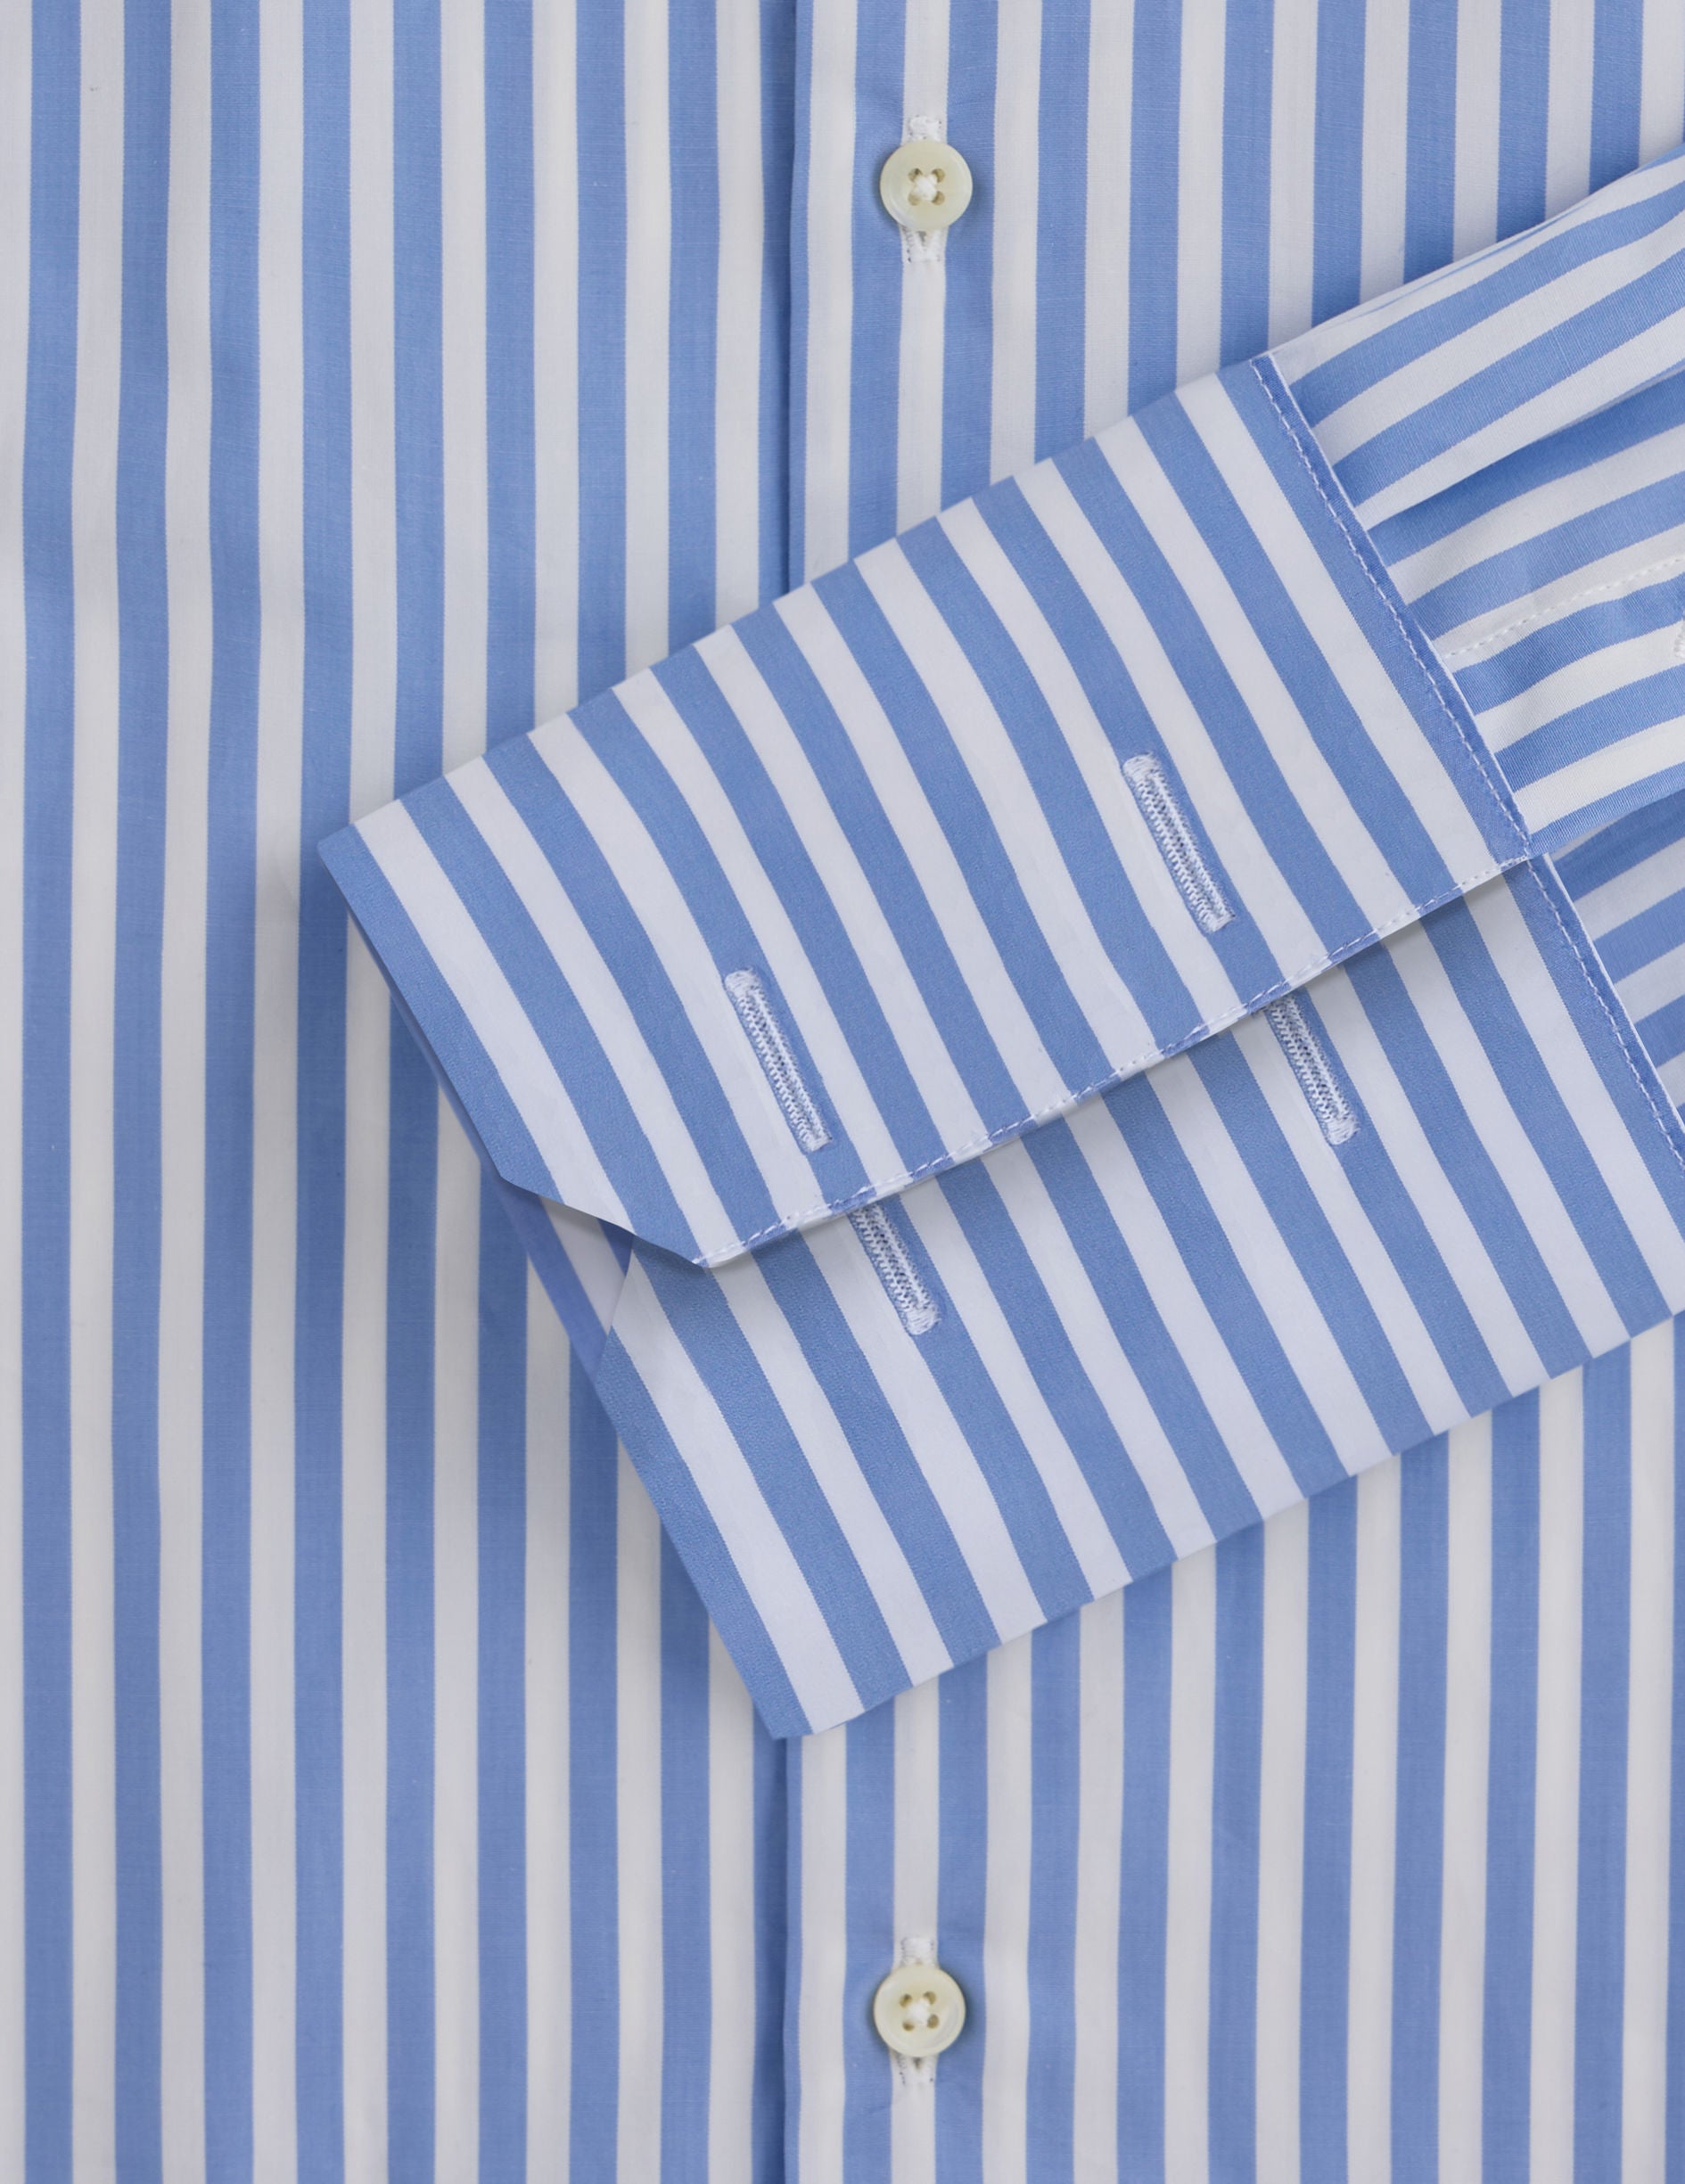 Chemise Semi-ajustée rayée bleue - Popeline - Col Italien - Poignets Mousquetaires